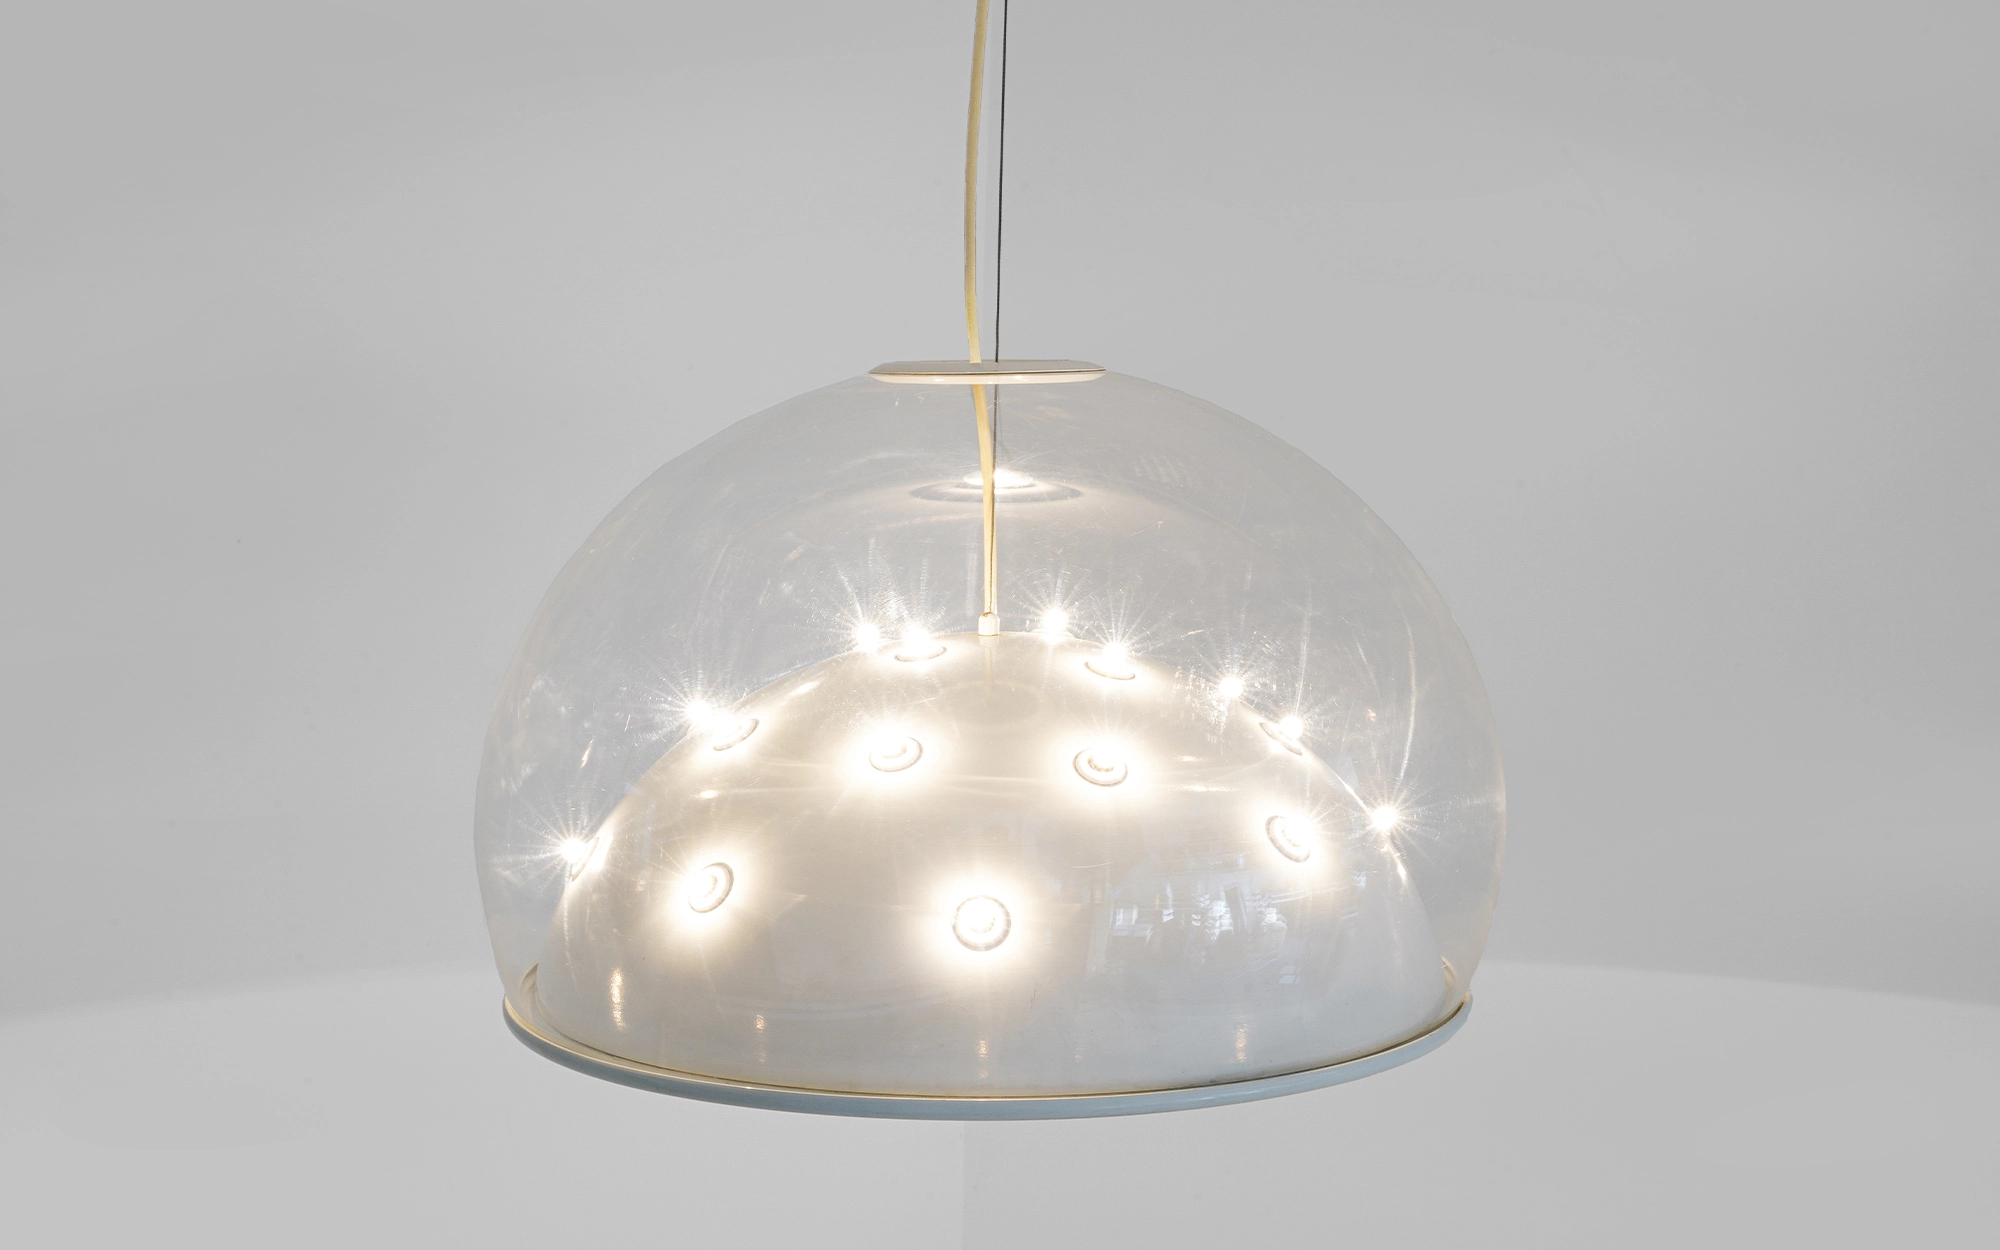 2130 - Gino Sarfatti - Pendant light - Galerie kreo